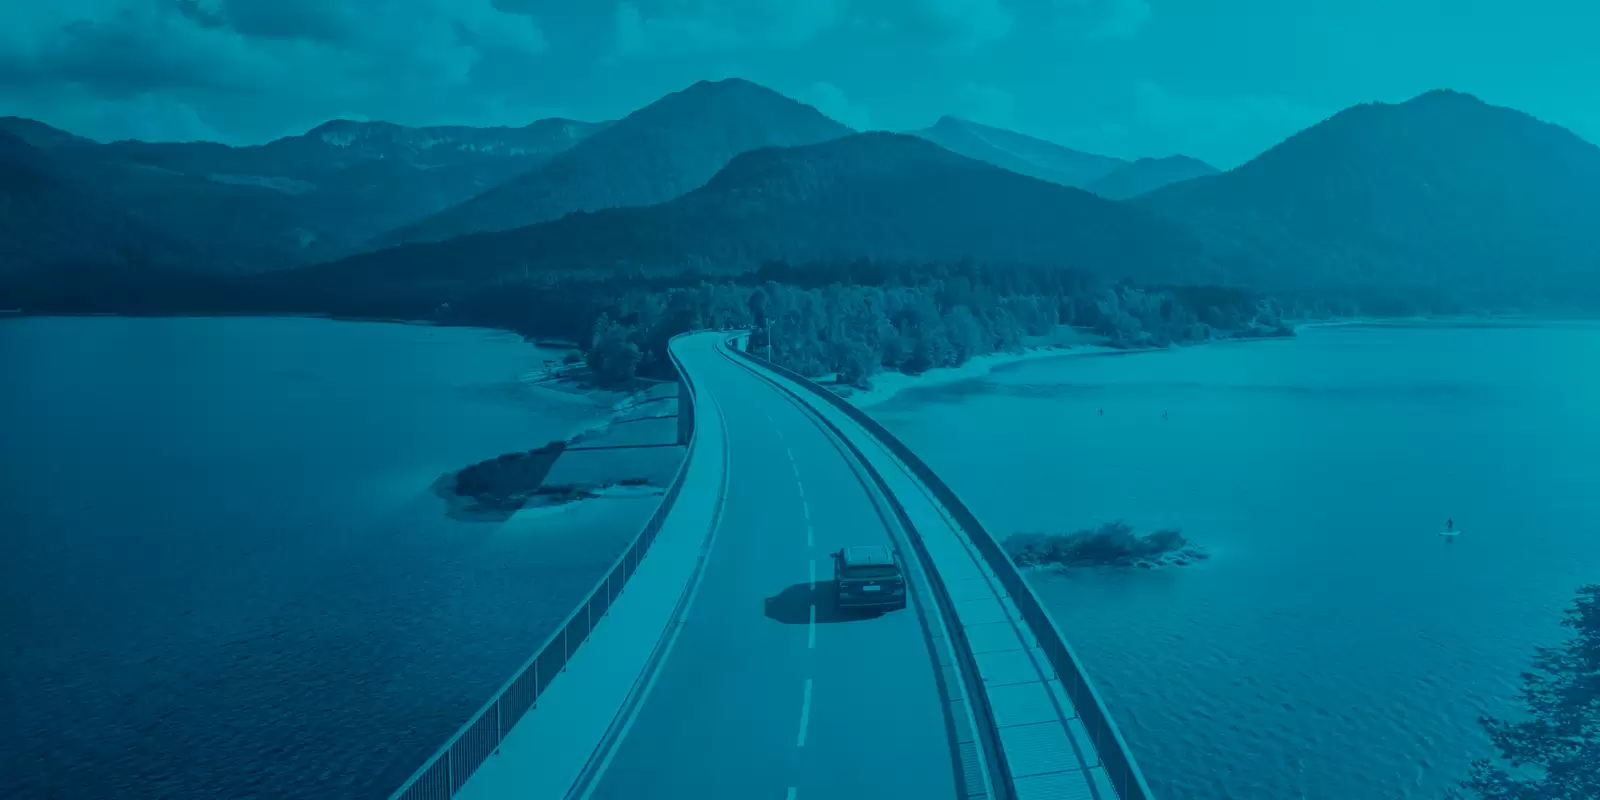 imagem t-cross na estrada com filtro azul